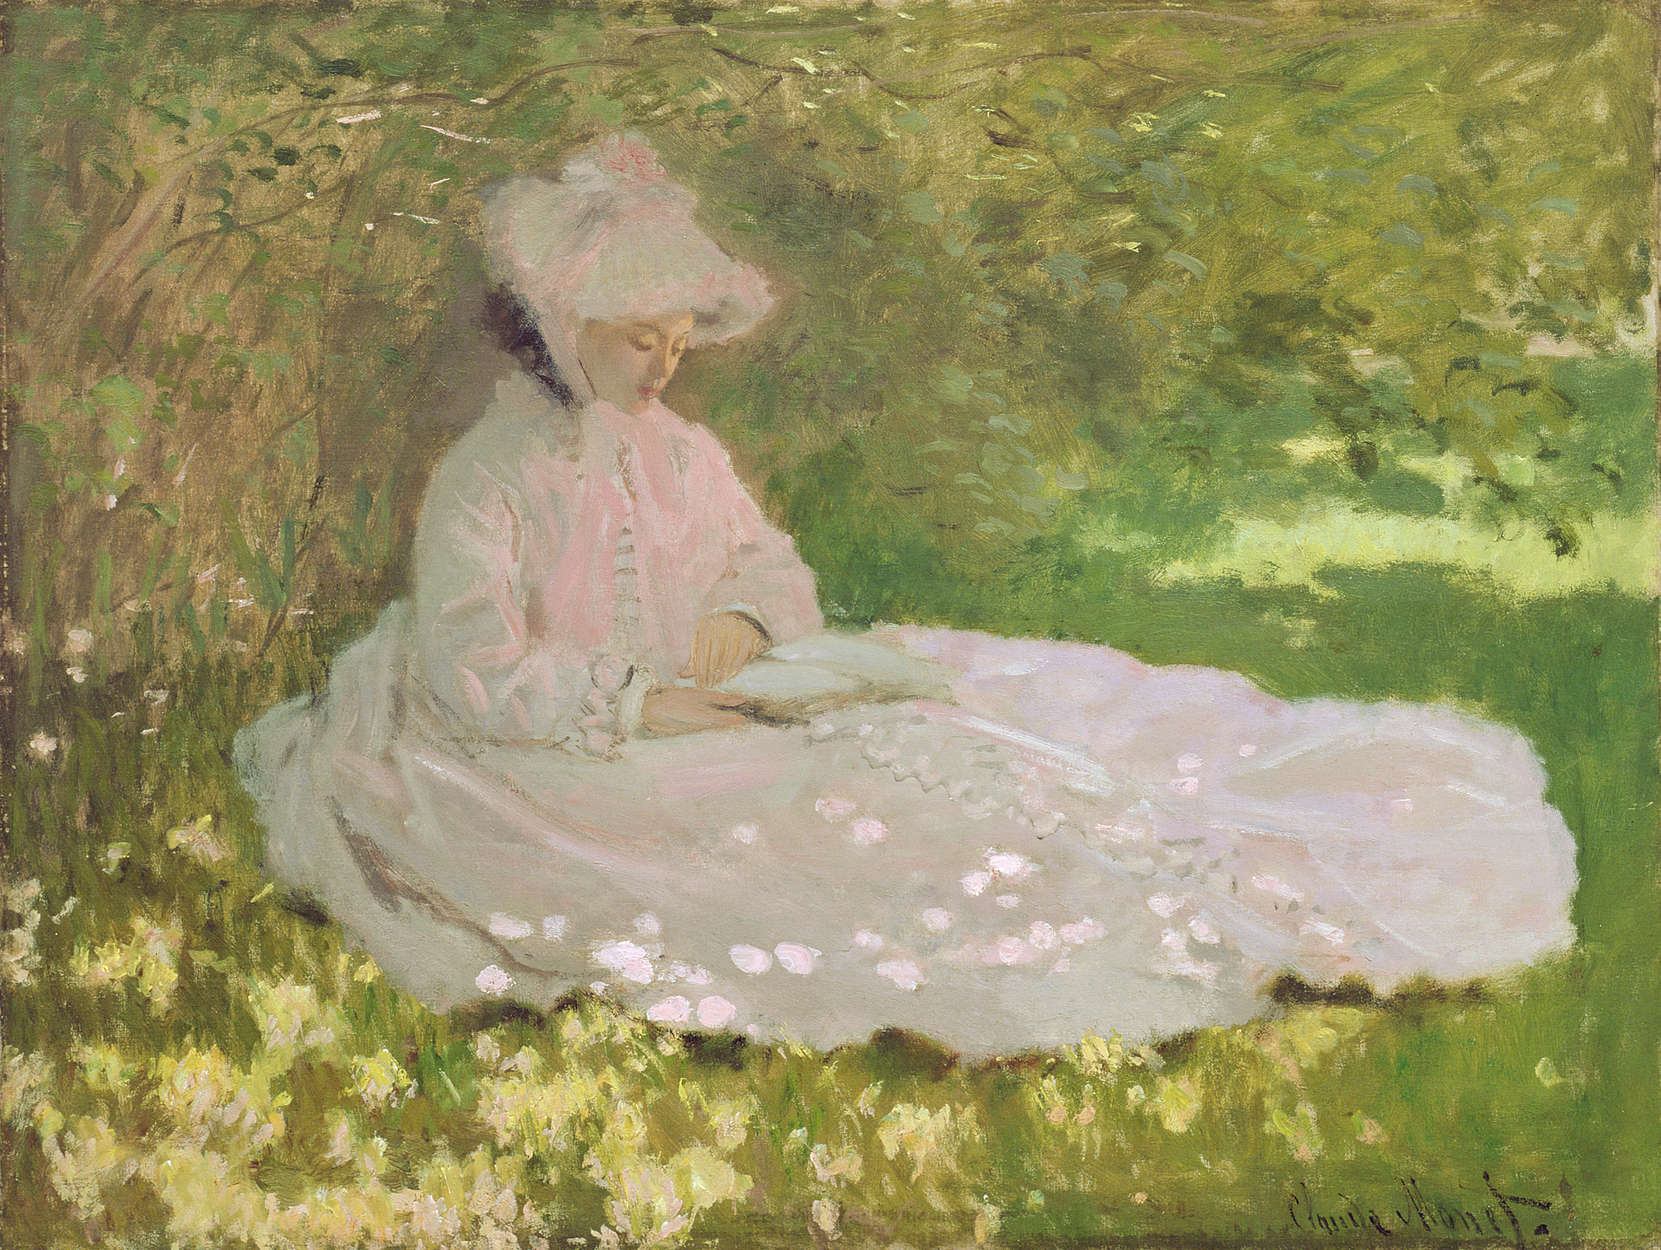             Fotomurali "Primavera" di Claude Monet
        